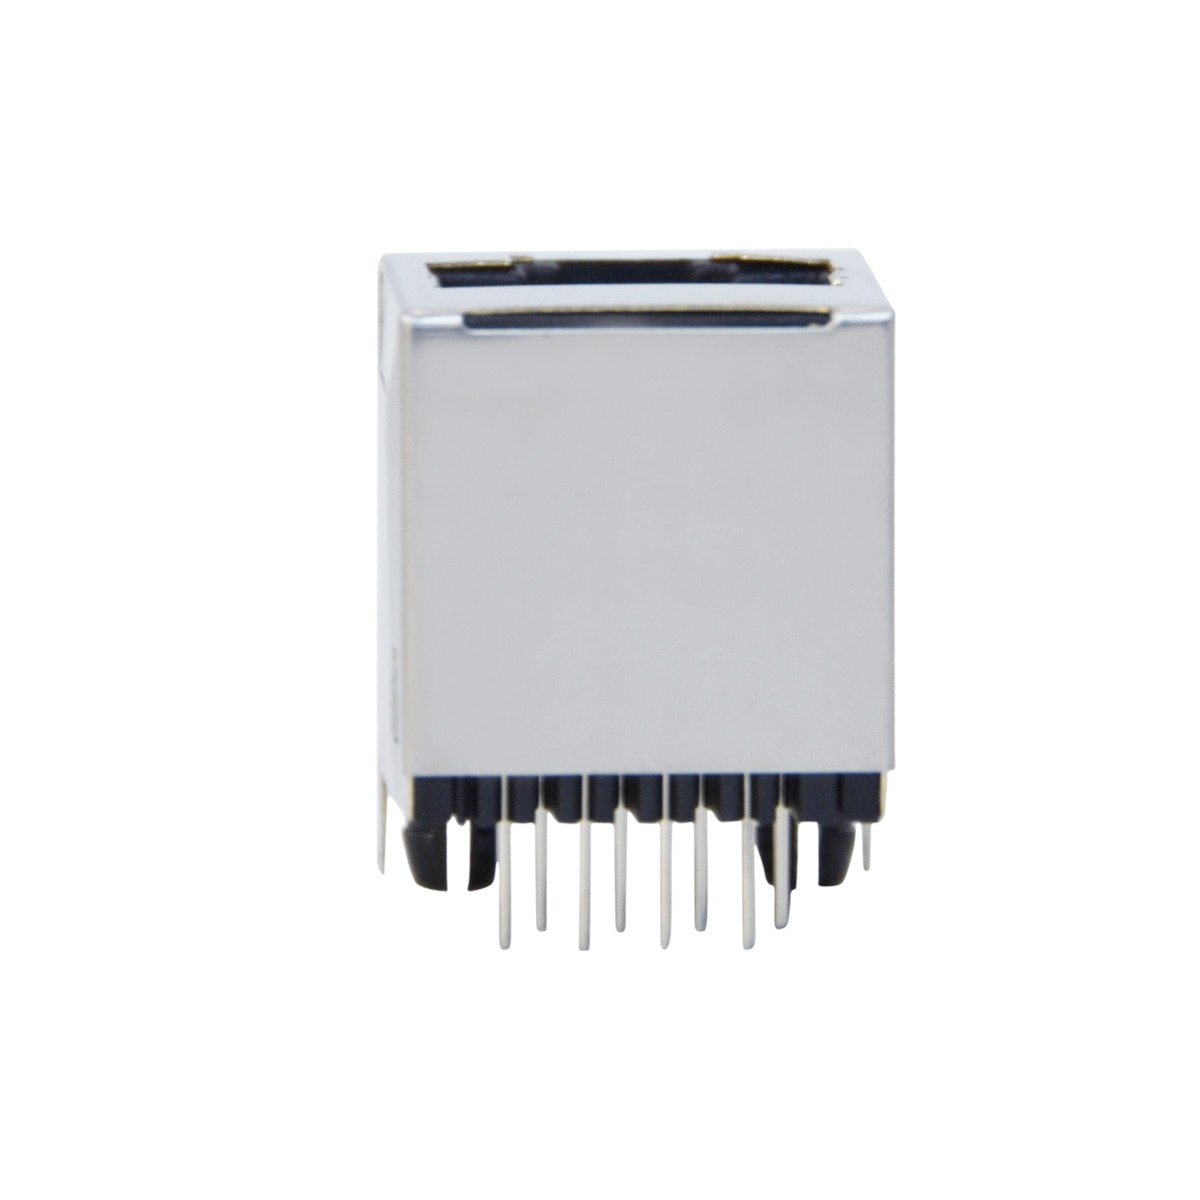 10 stk / sæt 8- pin pcb-monteret hunstikstik  rj45 netværksinterface ethernet 180 graders direkte indsats